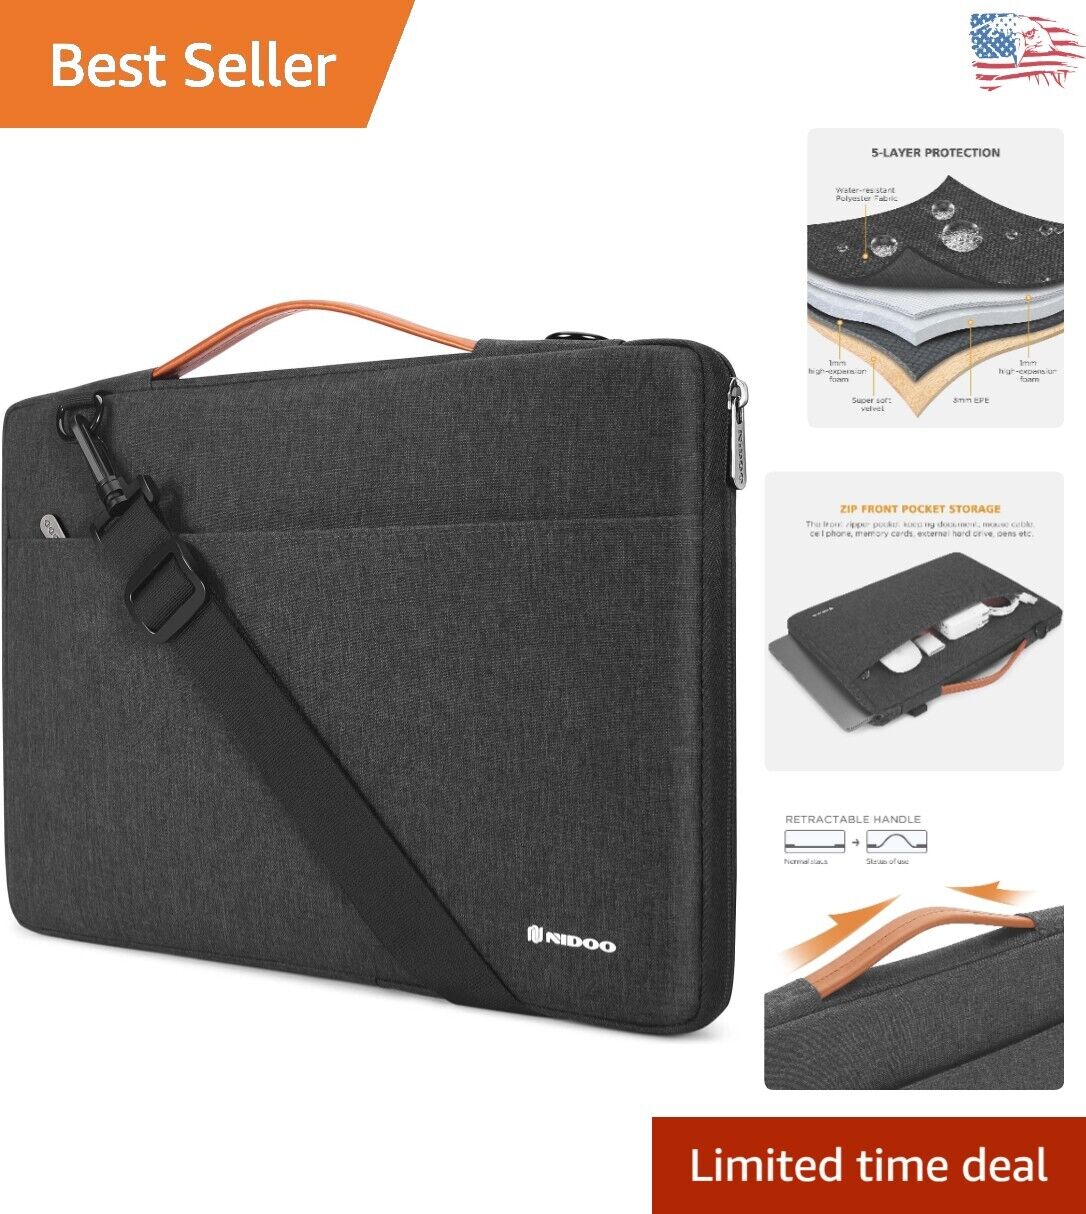 Multi-Functional Laptop Sleeve & Shoulder Bag - Elegant & Protective